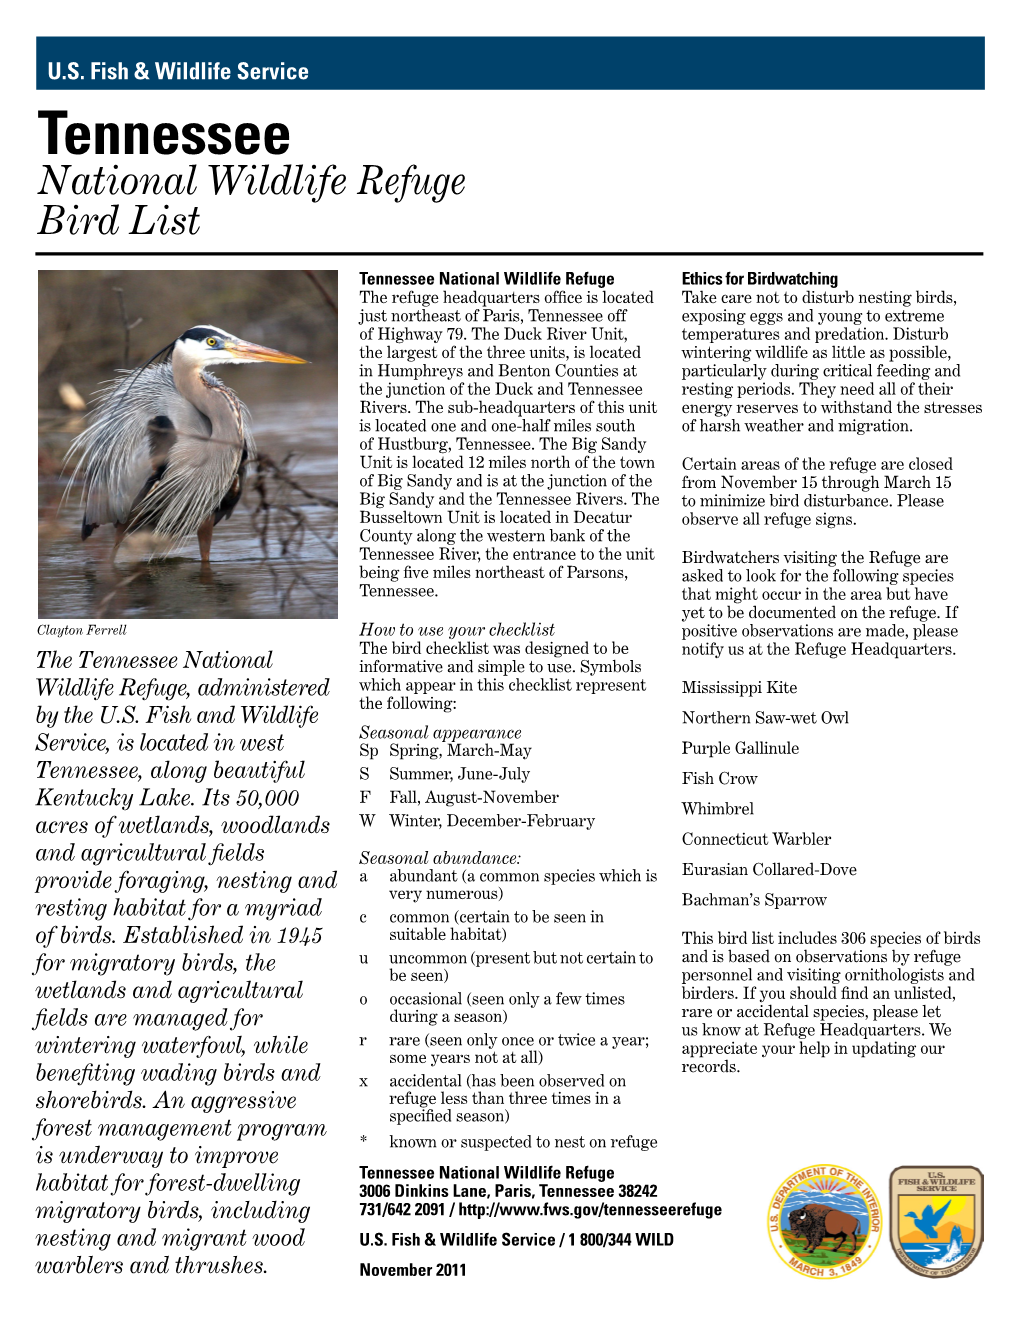 Tennessee National Wildlife Refuge Bird List